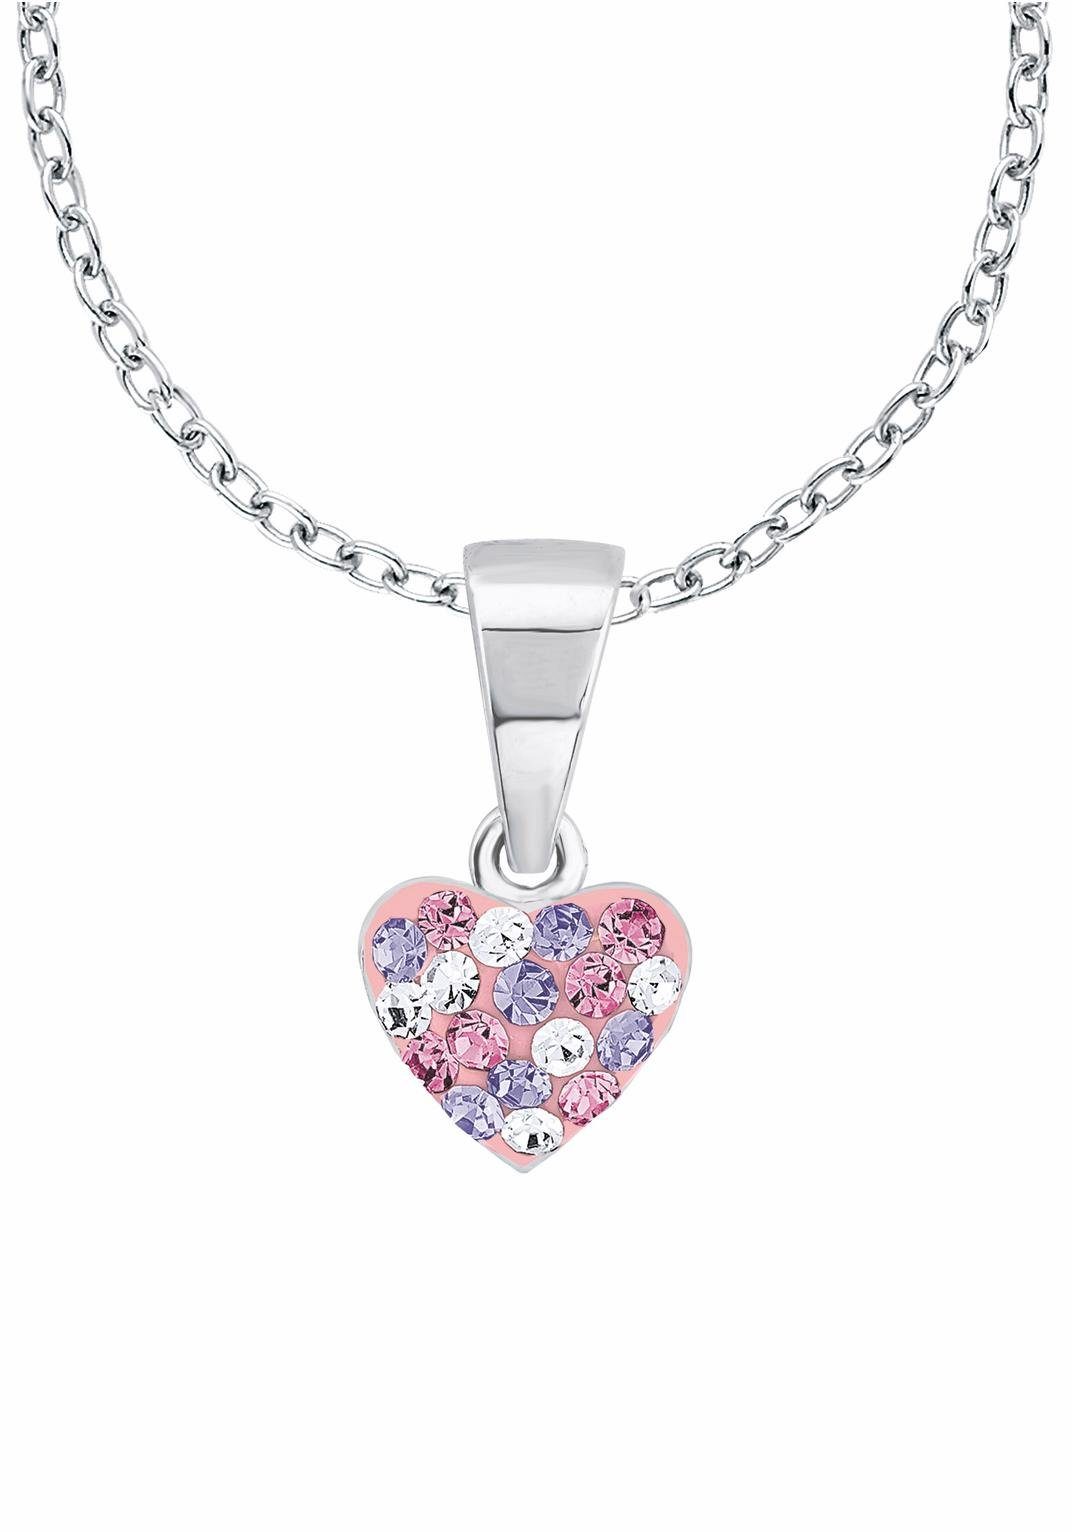 Kristallsteinen Herz, Prinzessin Lillifee mit 2013171, Silberkette